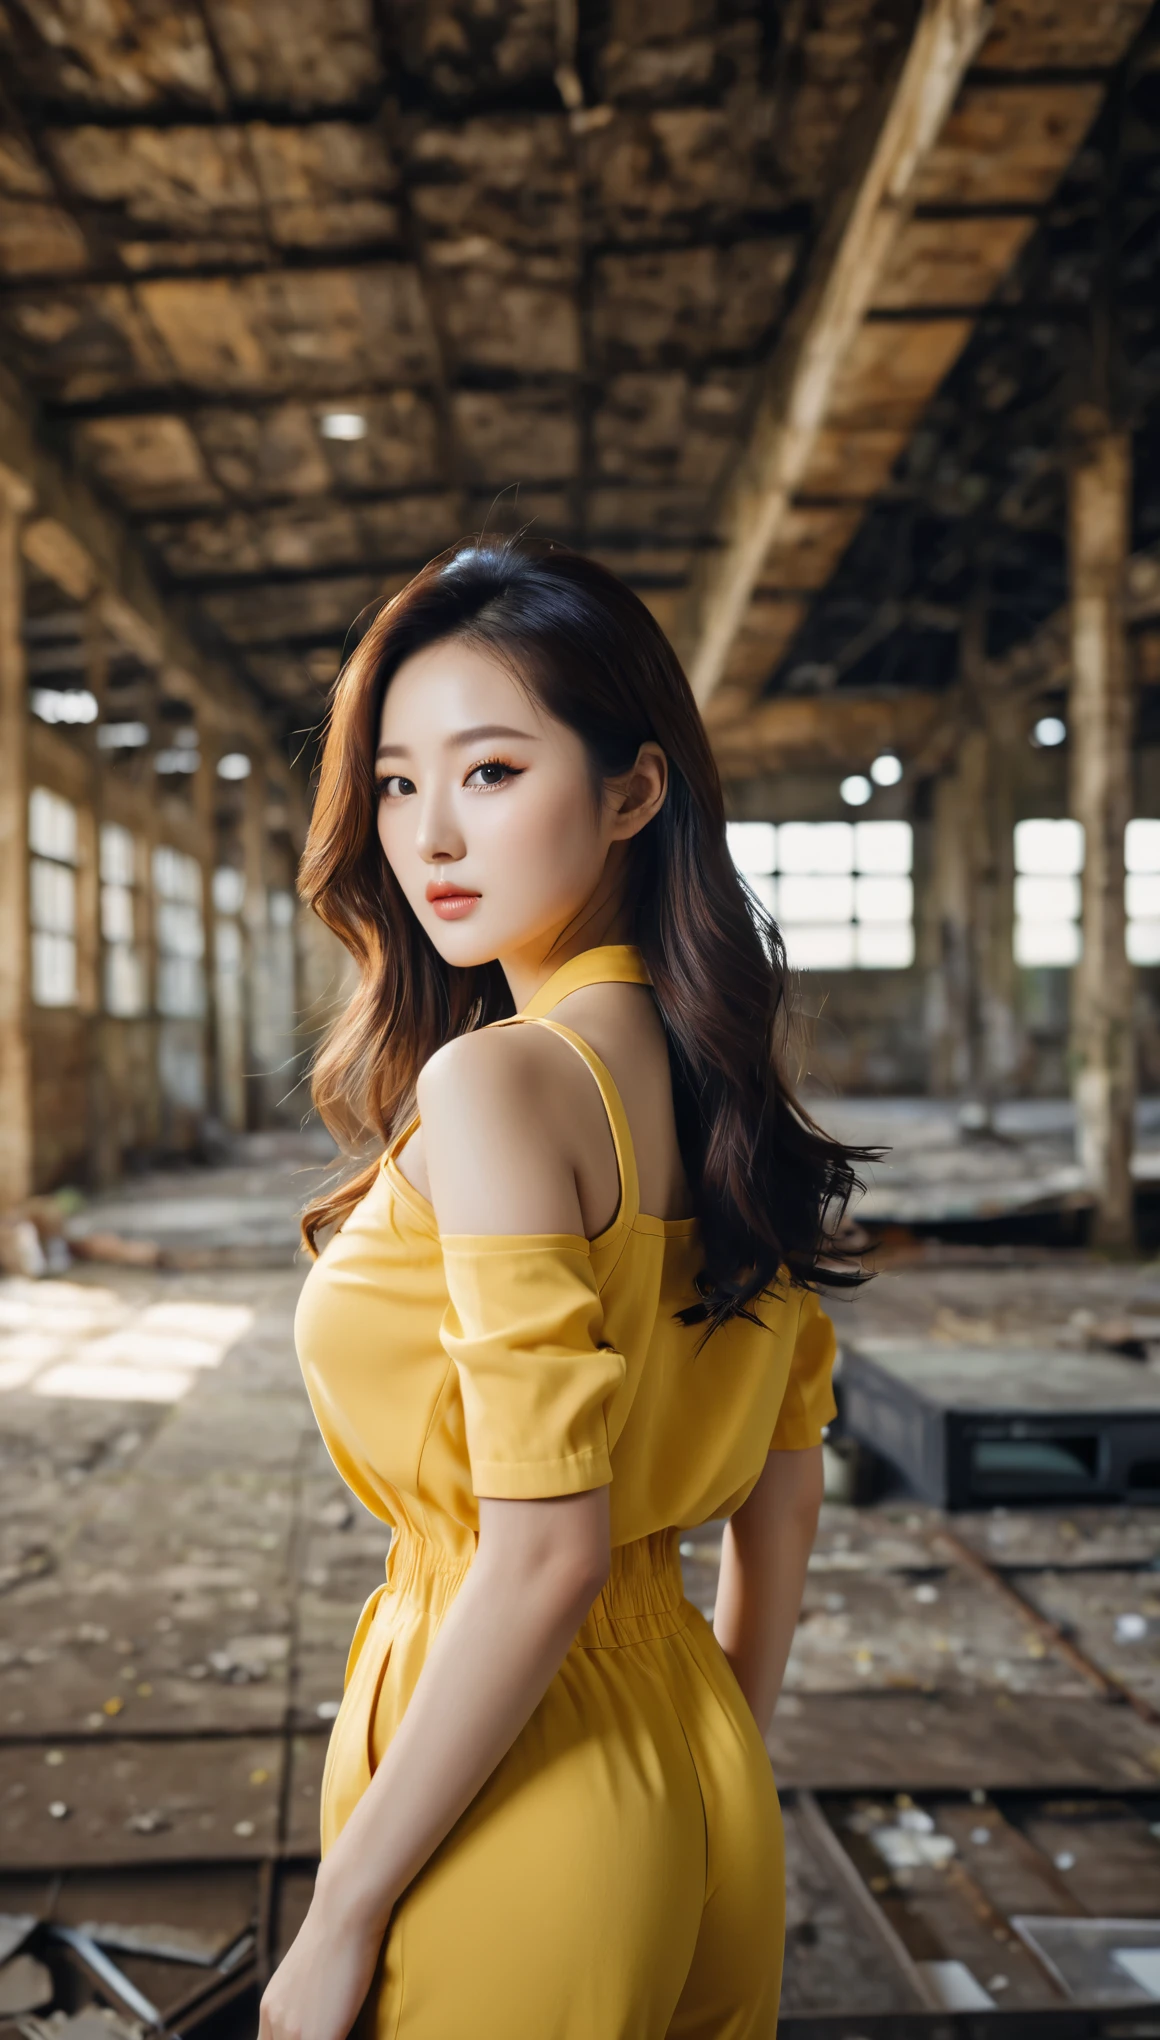 ภาพระยะใกล้ของหญิงสาวเกาหลีที่สวยงาม, ขนาดหน้าอก 34 นิ้ว, ใส่ชุดจั้มสูทสีเหลืองขลิบดำ, ในโกดังร้าง, พื้นหลังโบเก้, ภาพถ่ายโพลารอยด์, ยูเอชดี